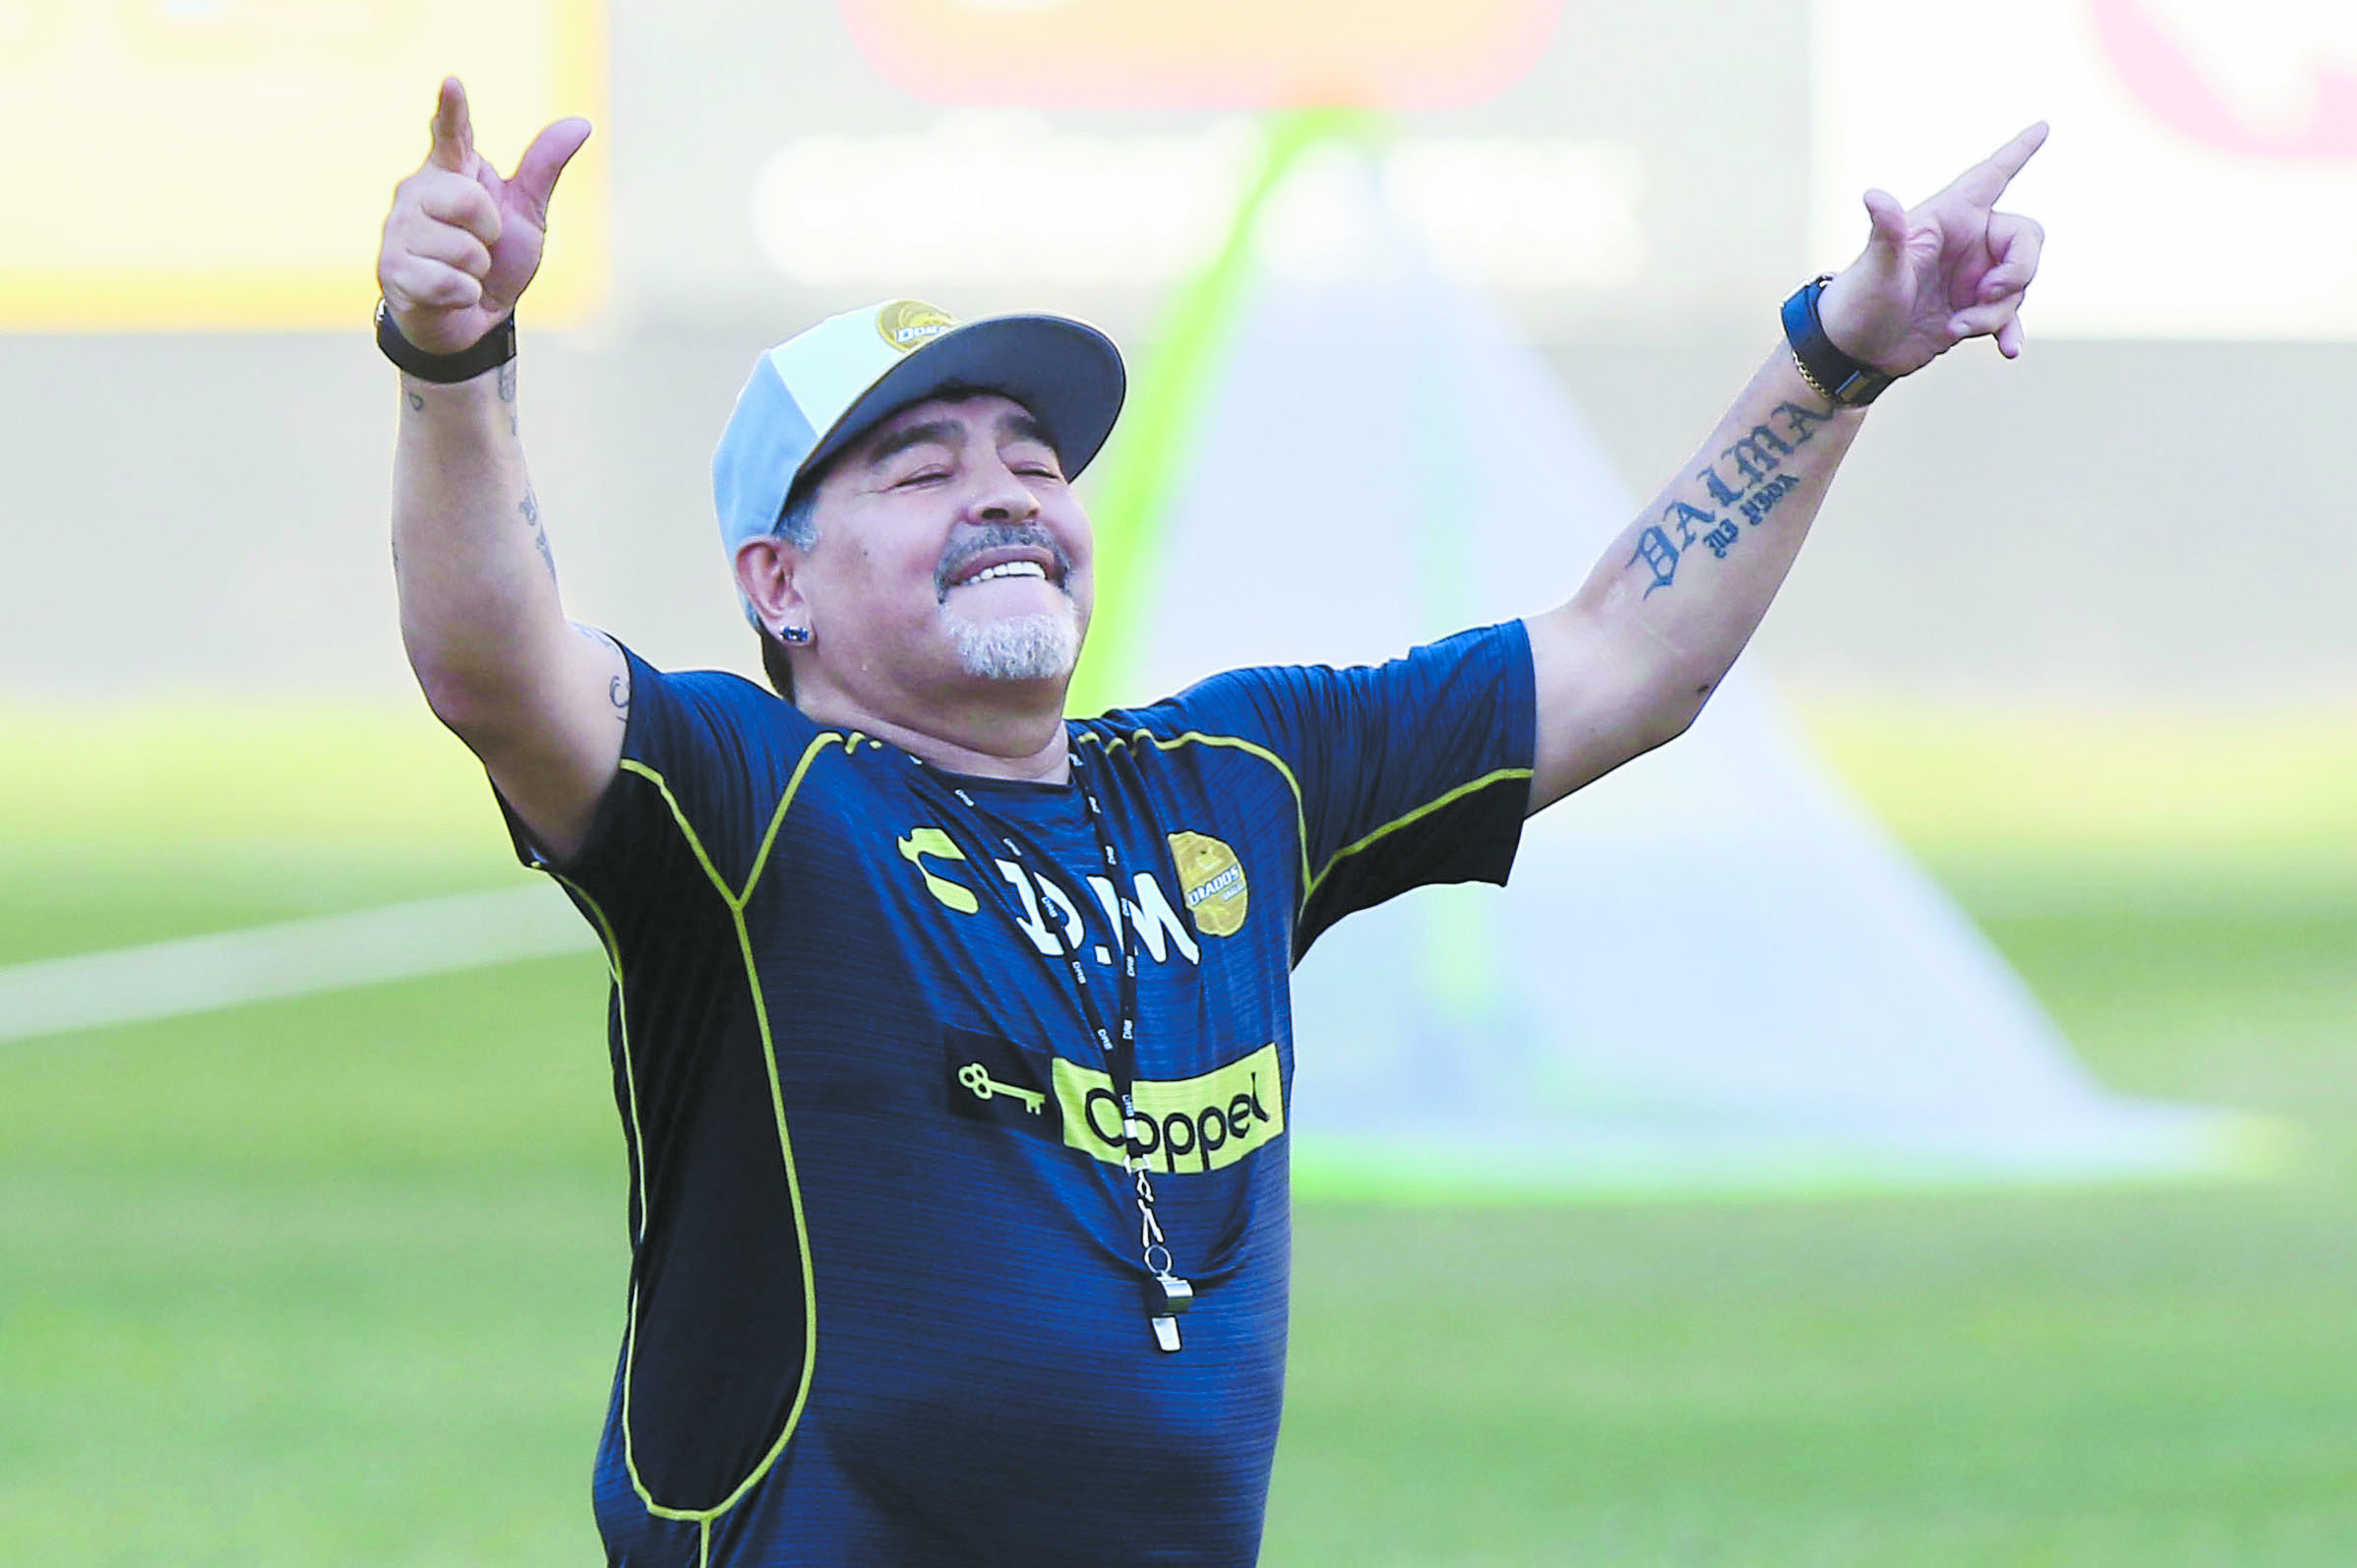 Al estilo Ronaldinho, Maradona exige casa con playa artificial